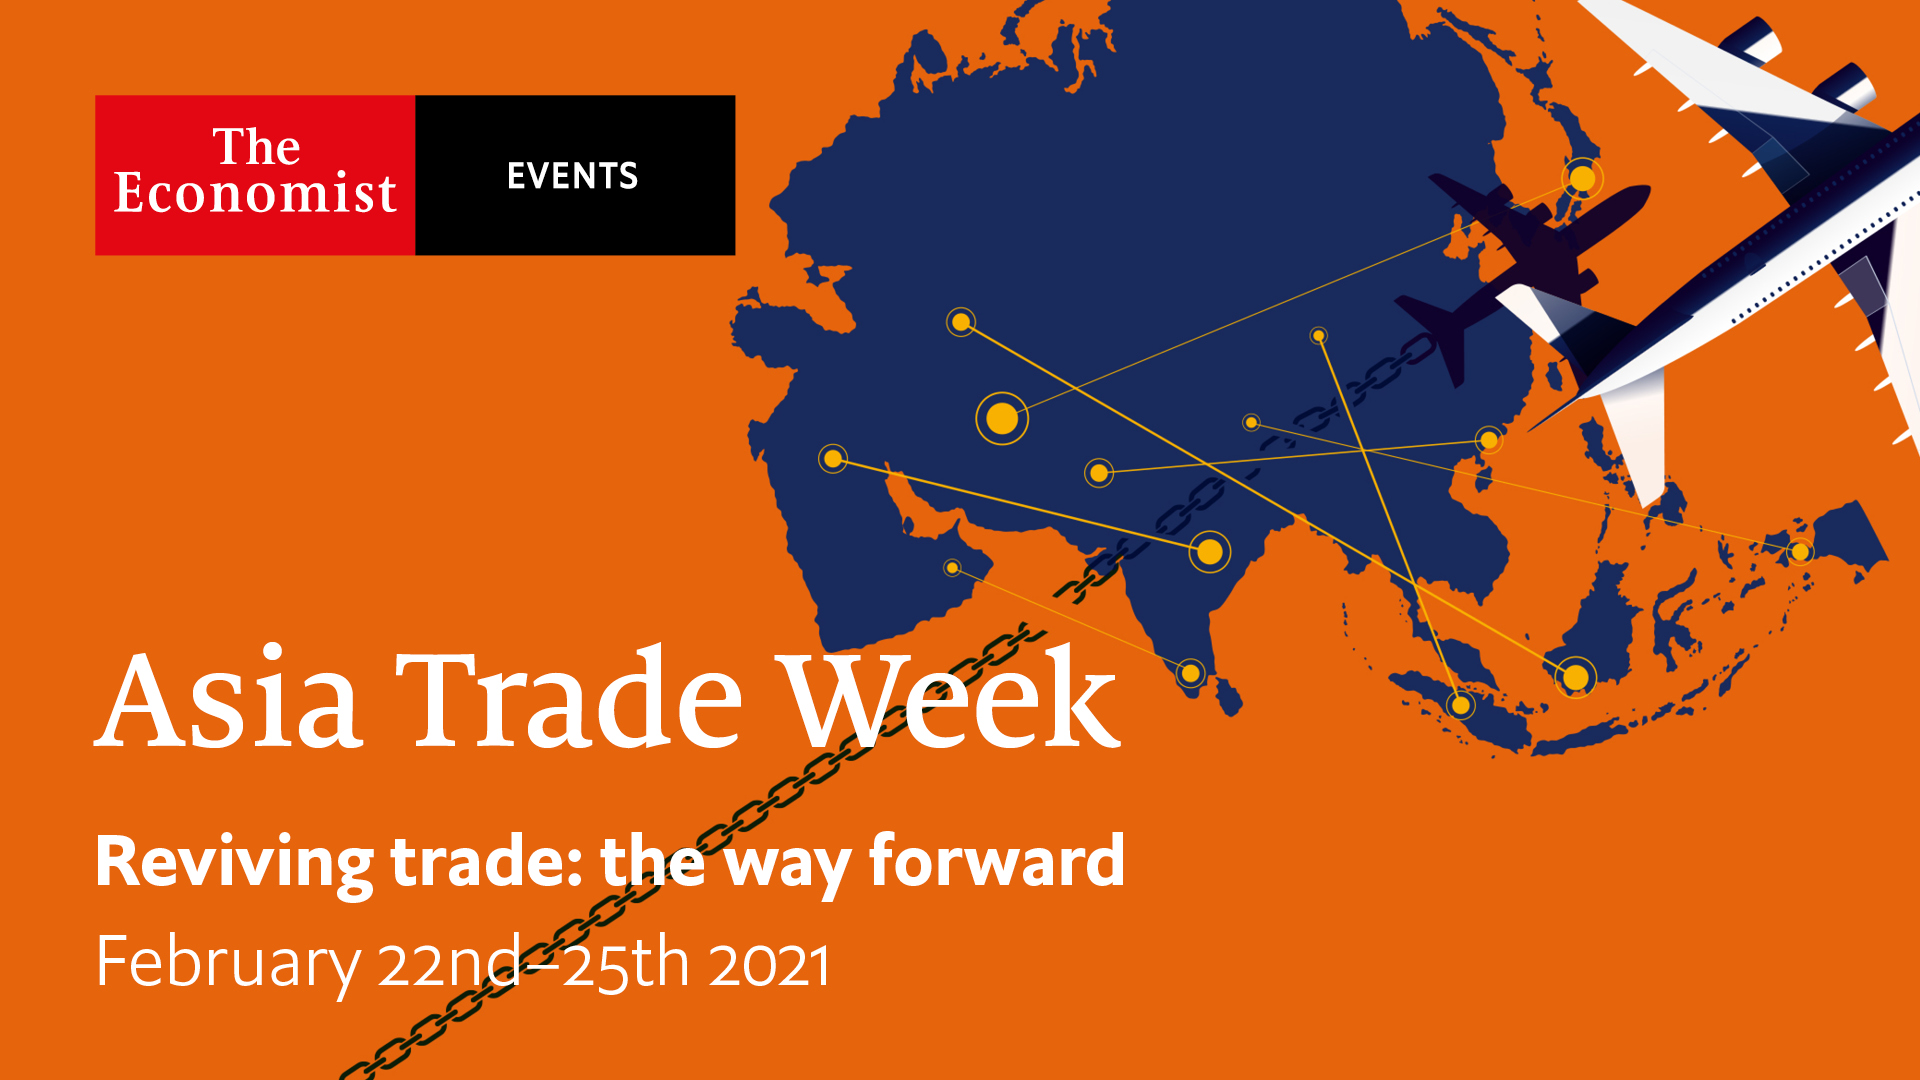 Asia Trade Week